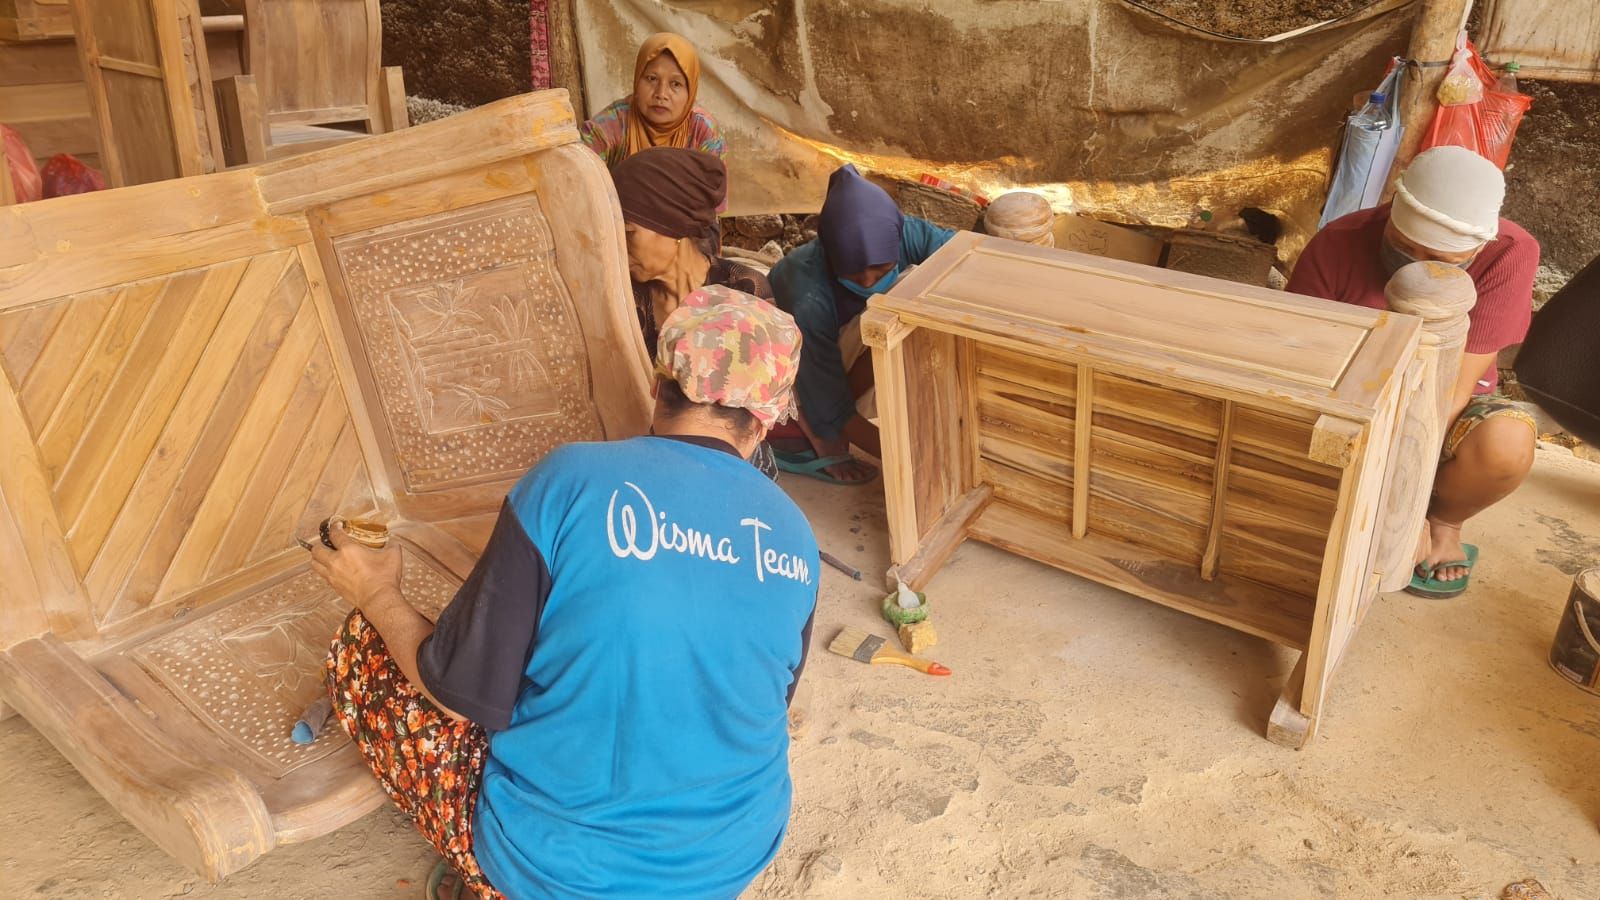 Lapak Ganjar bantu promosi usaha furniture di Desa Kuwasen RT 4 RW 1, Jepara, Jawa Tengah.